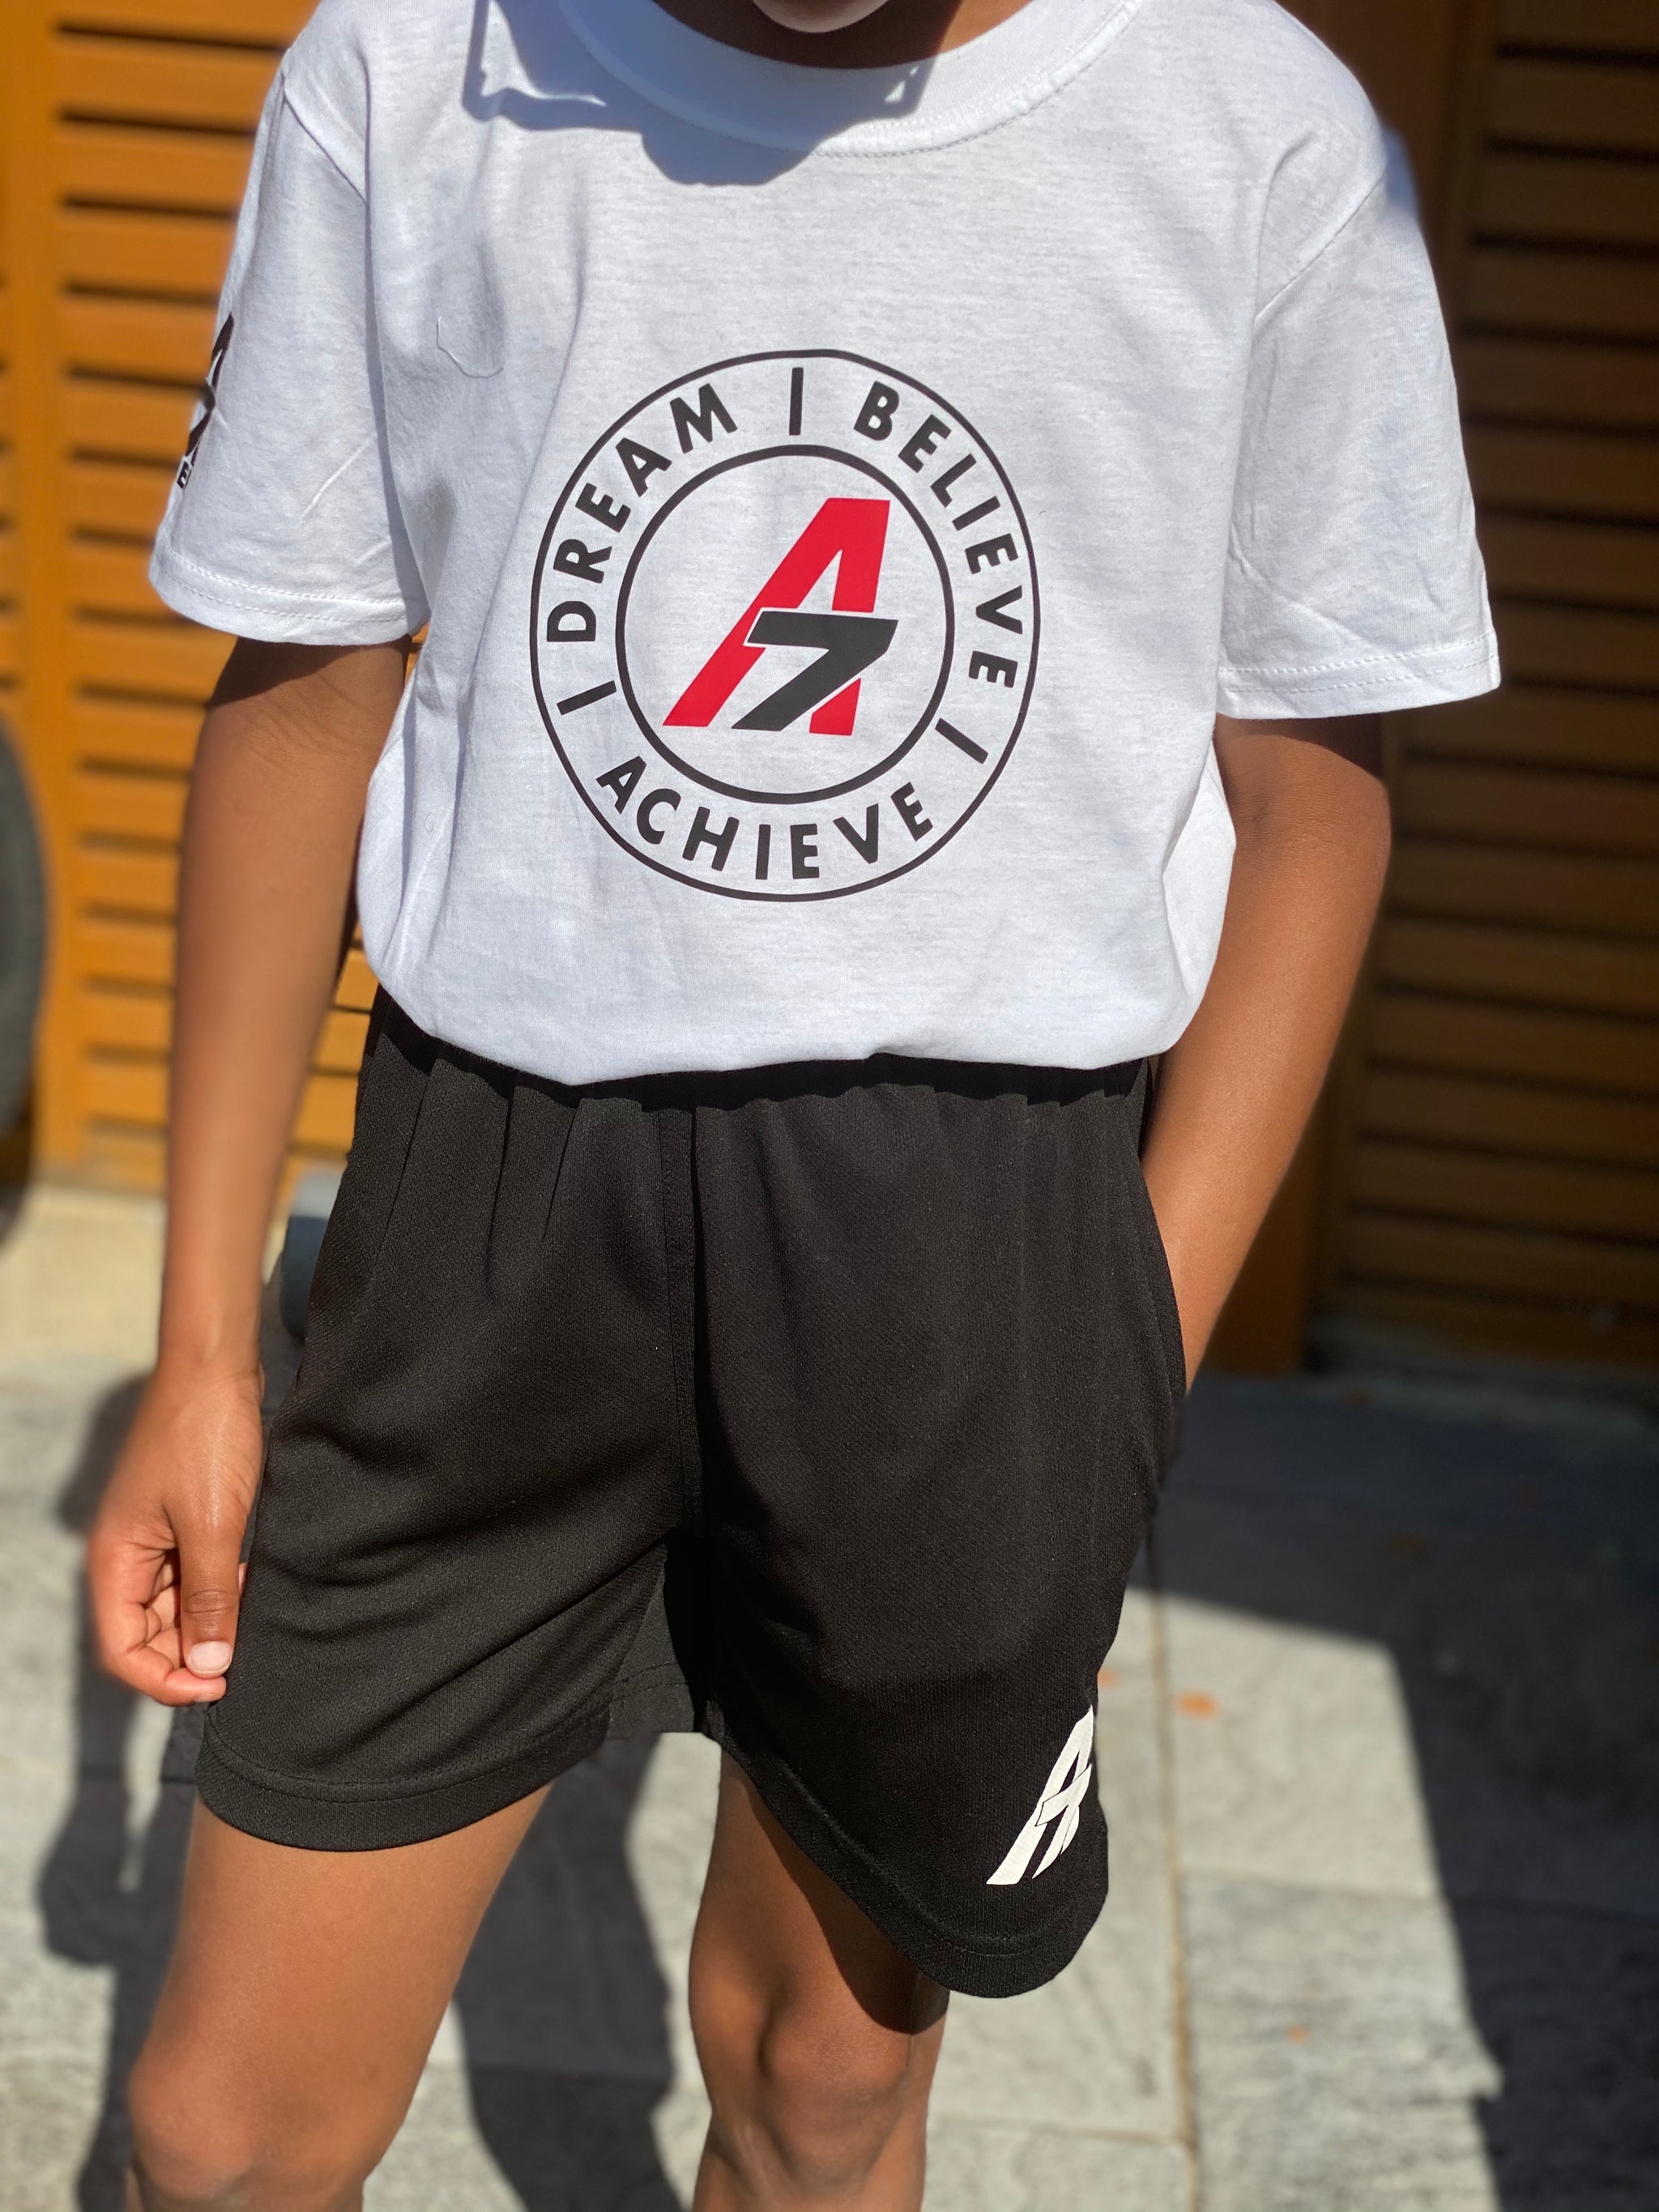 A7 Asher Dream| Believe| Achieve circle logo white Kids Tshirt